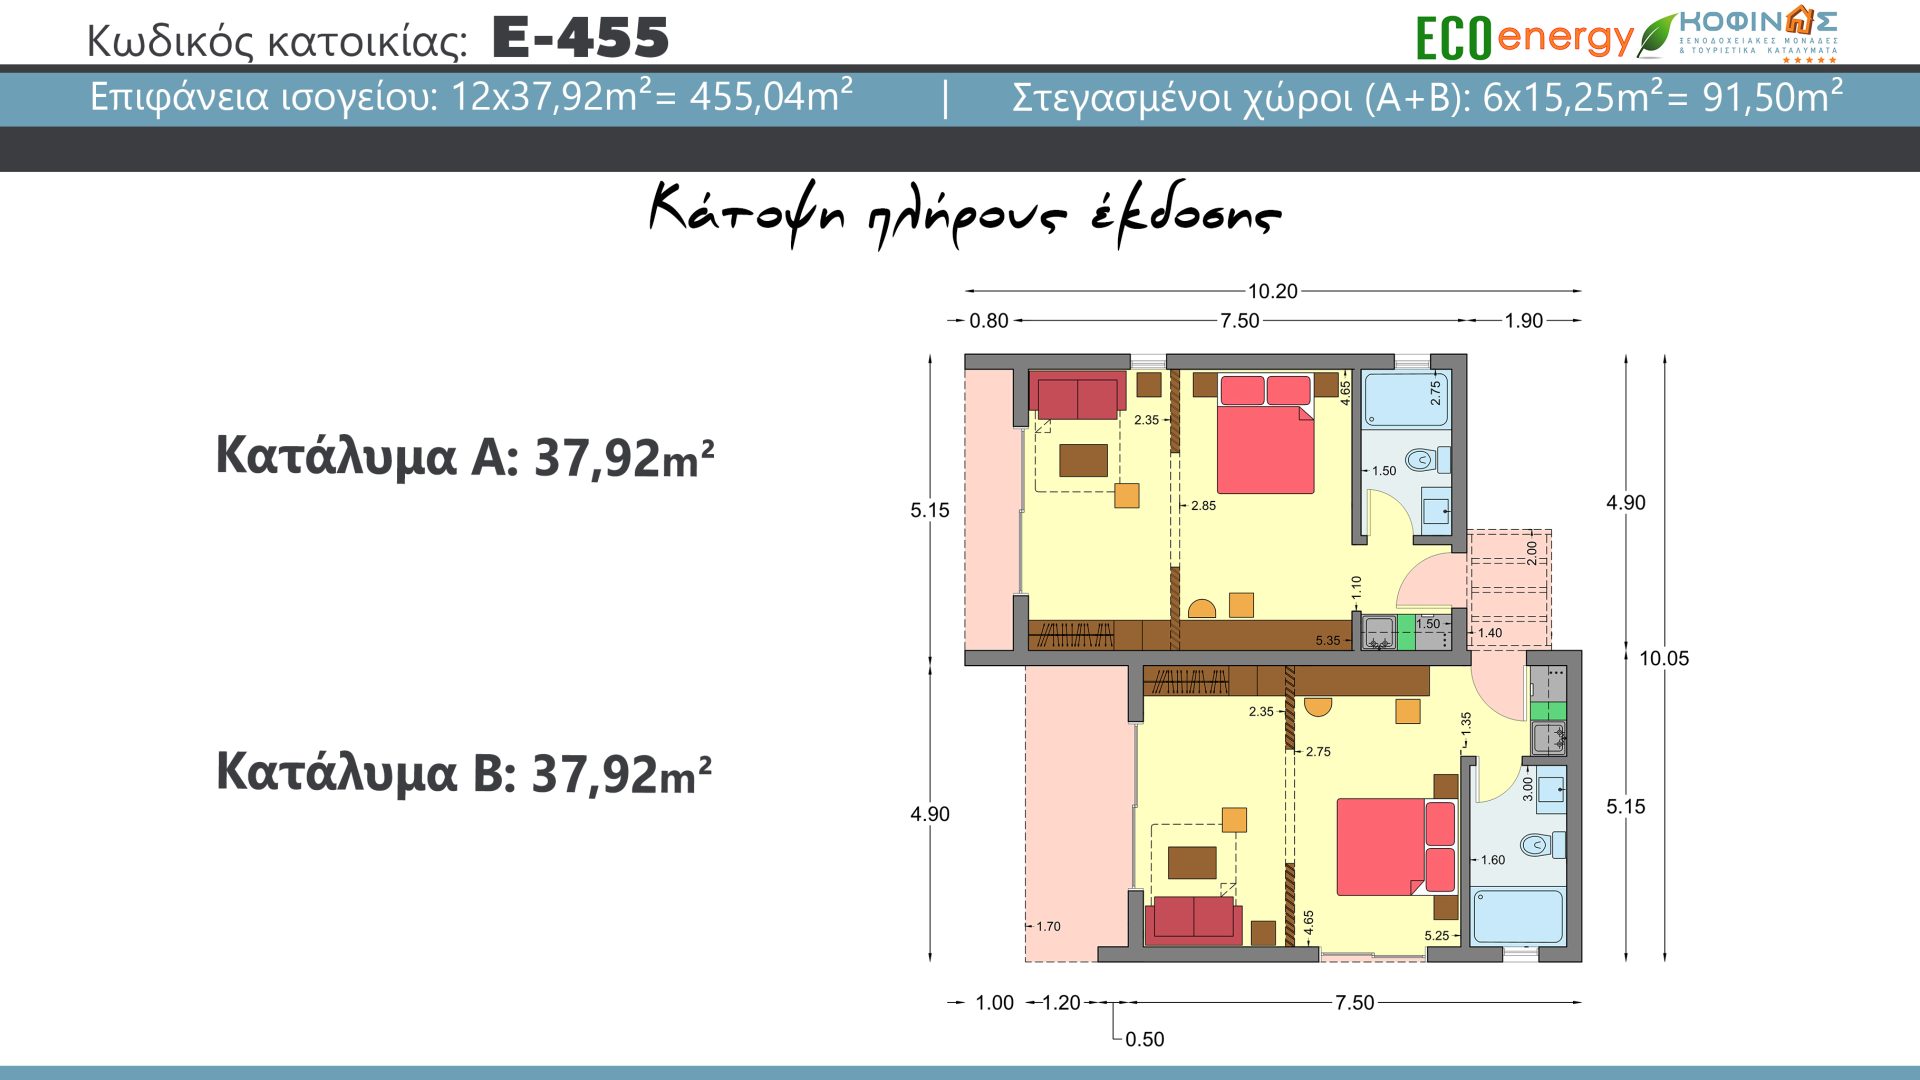 Συγκρότημα κατοικιών E-455, συνολικής επιφάνειας 12 x 37,92 = 455,04 τ.μ., συνολική επιφάνεια στεγασμένων χώρων 95,50 τ.μ.